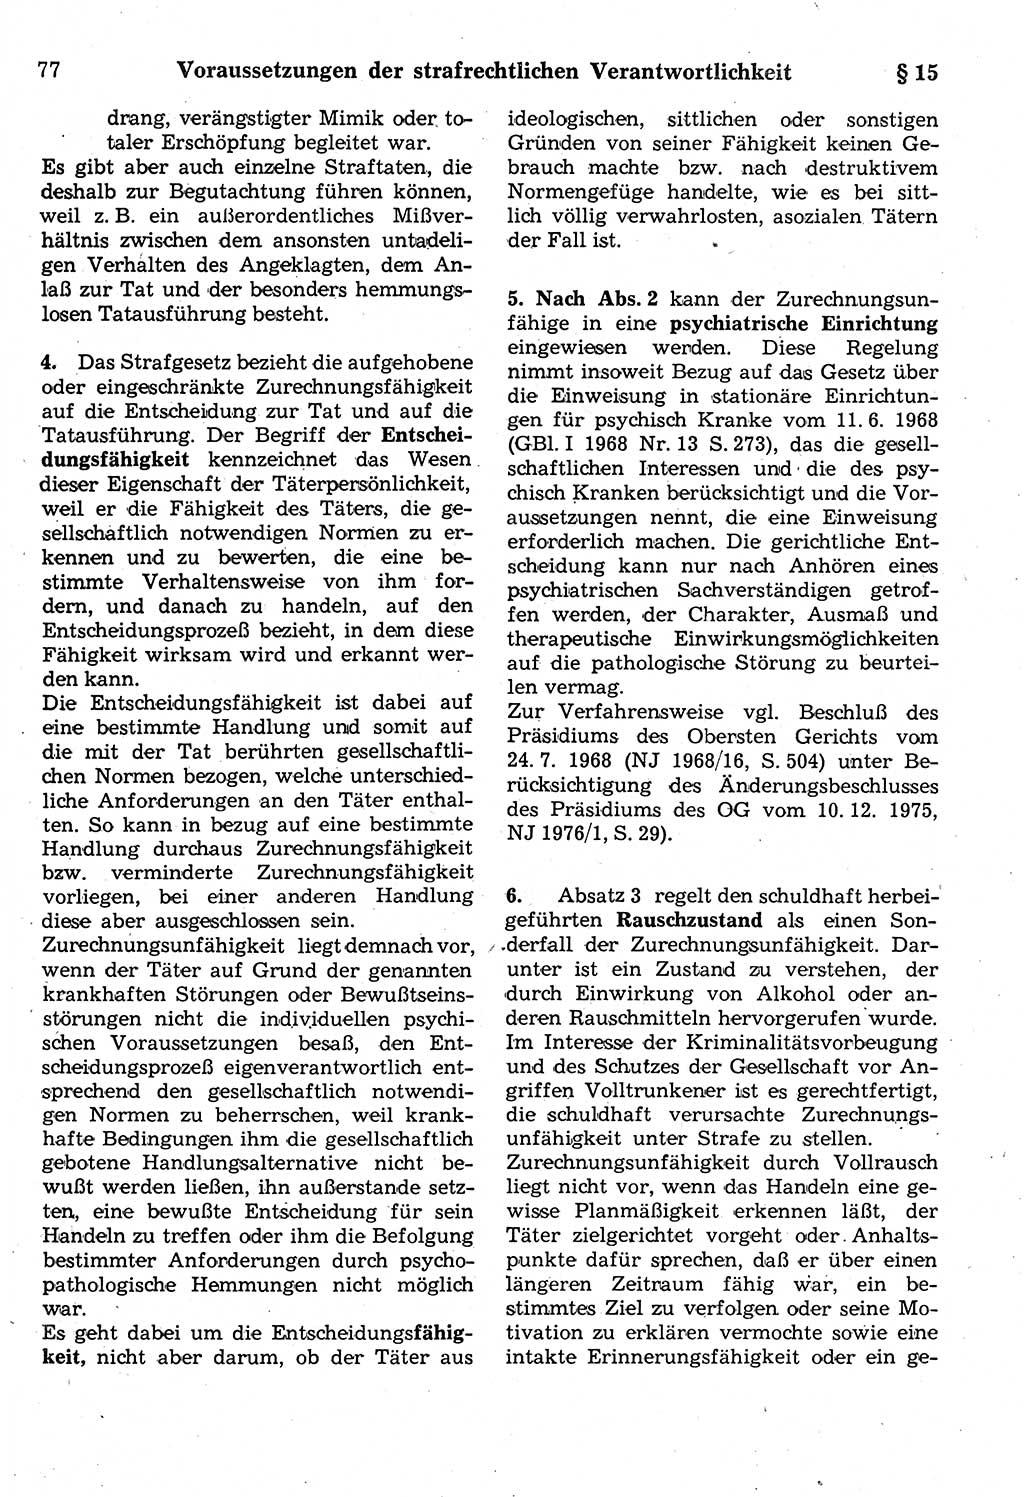 Strafrecht der Deutschen Demokratischen Republik (DDR), Kommentar zum Strafgesetzbuch (StGB) 1987, Seite 77 (Strafr. DDR Komm. StGB 1987, S. 77)